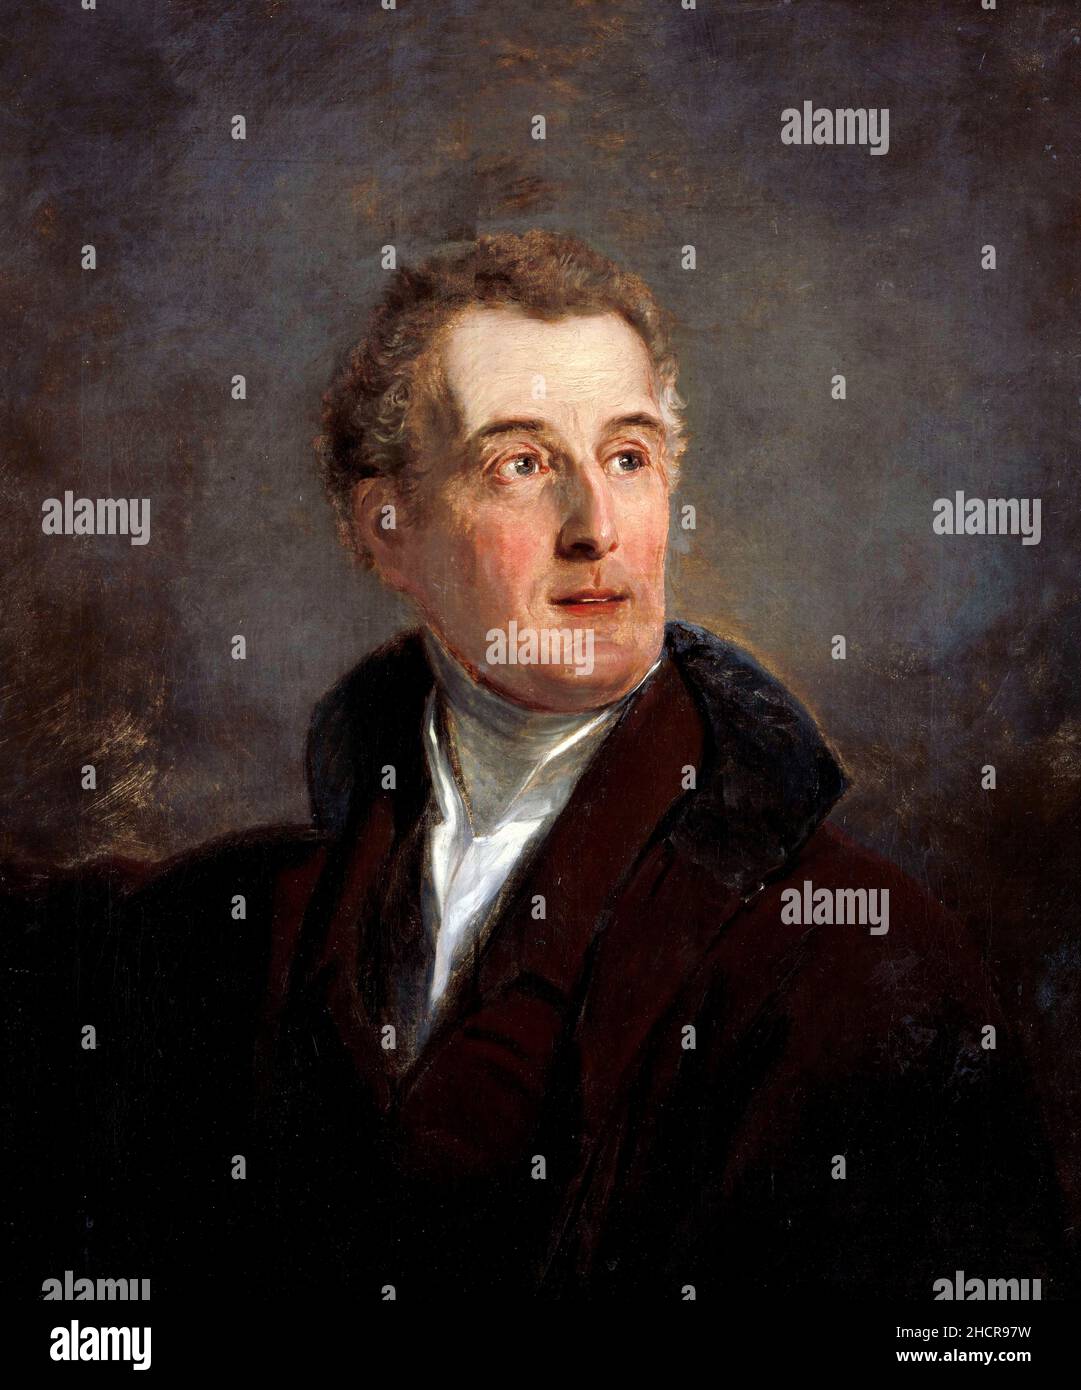 Portrait Study of Arthur Wellesley, Duke of Wellington by Jan Willem Pieneman (1779-1853), oil on canvas, 1821. Stock Photo